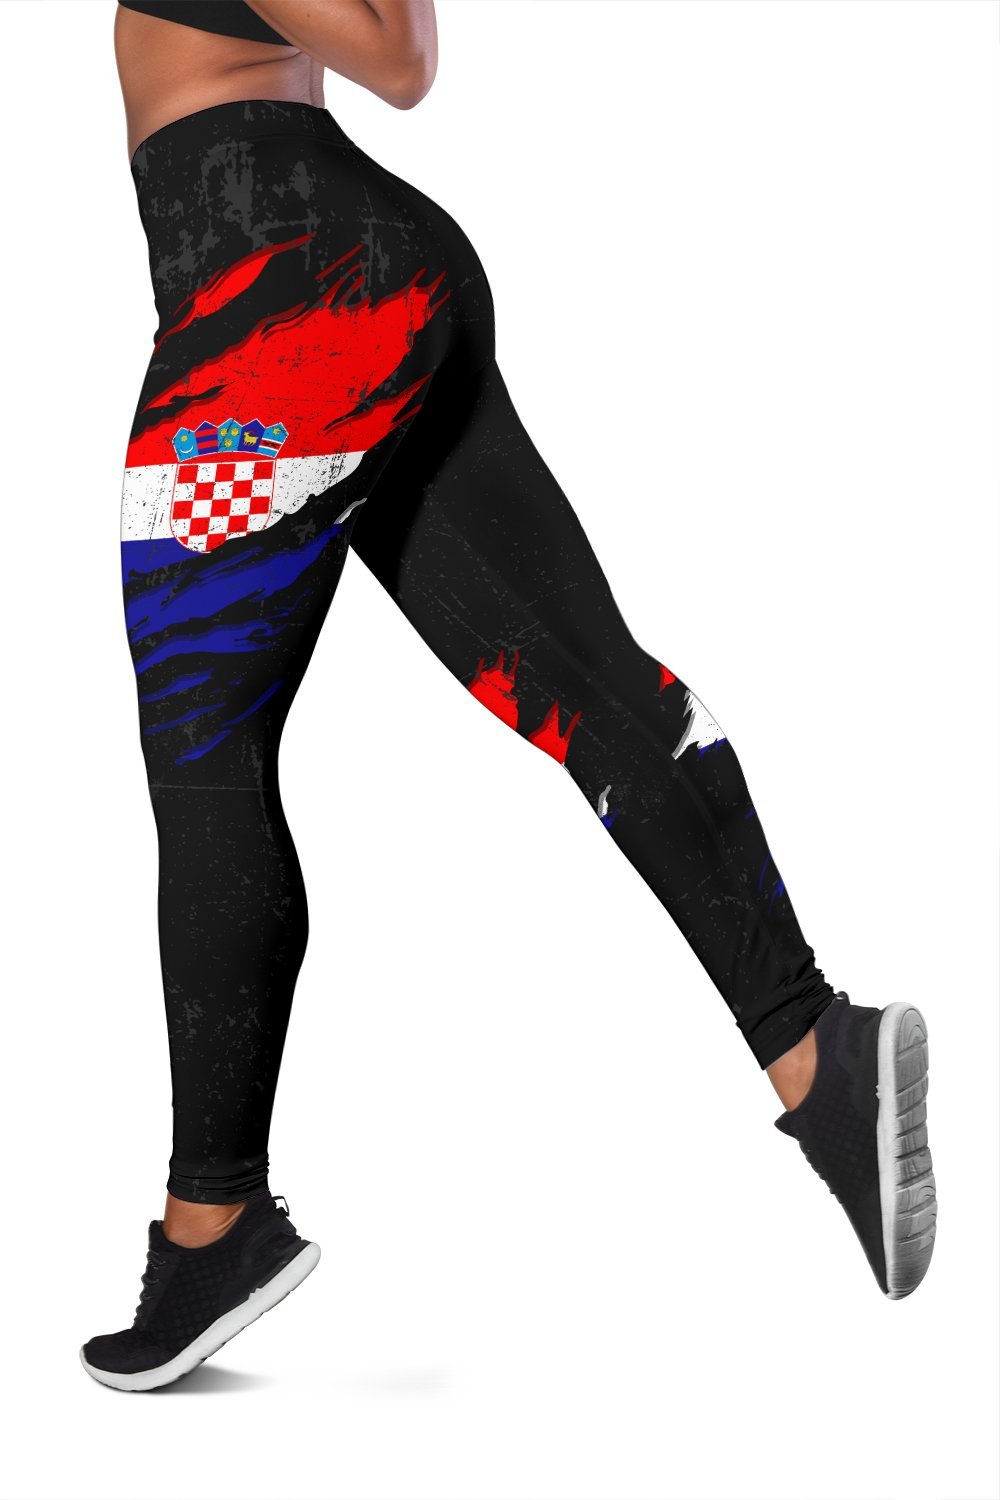 croatia-in-me-leggings-special-grunge-style